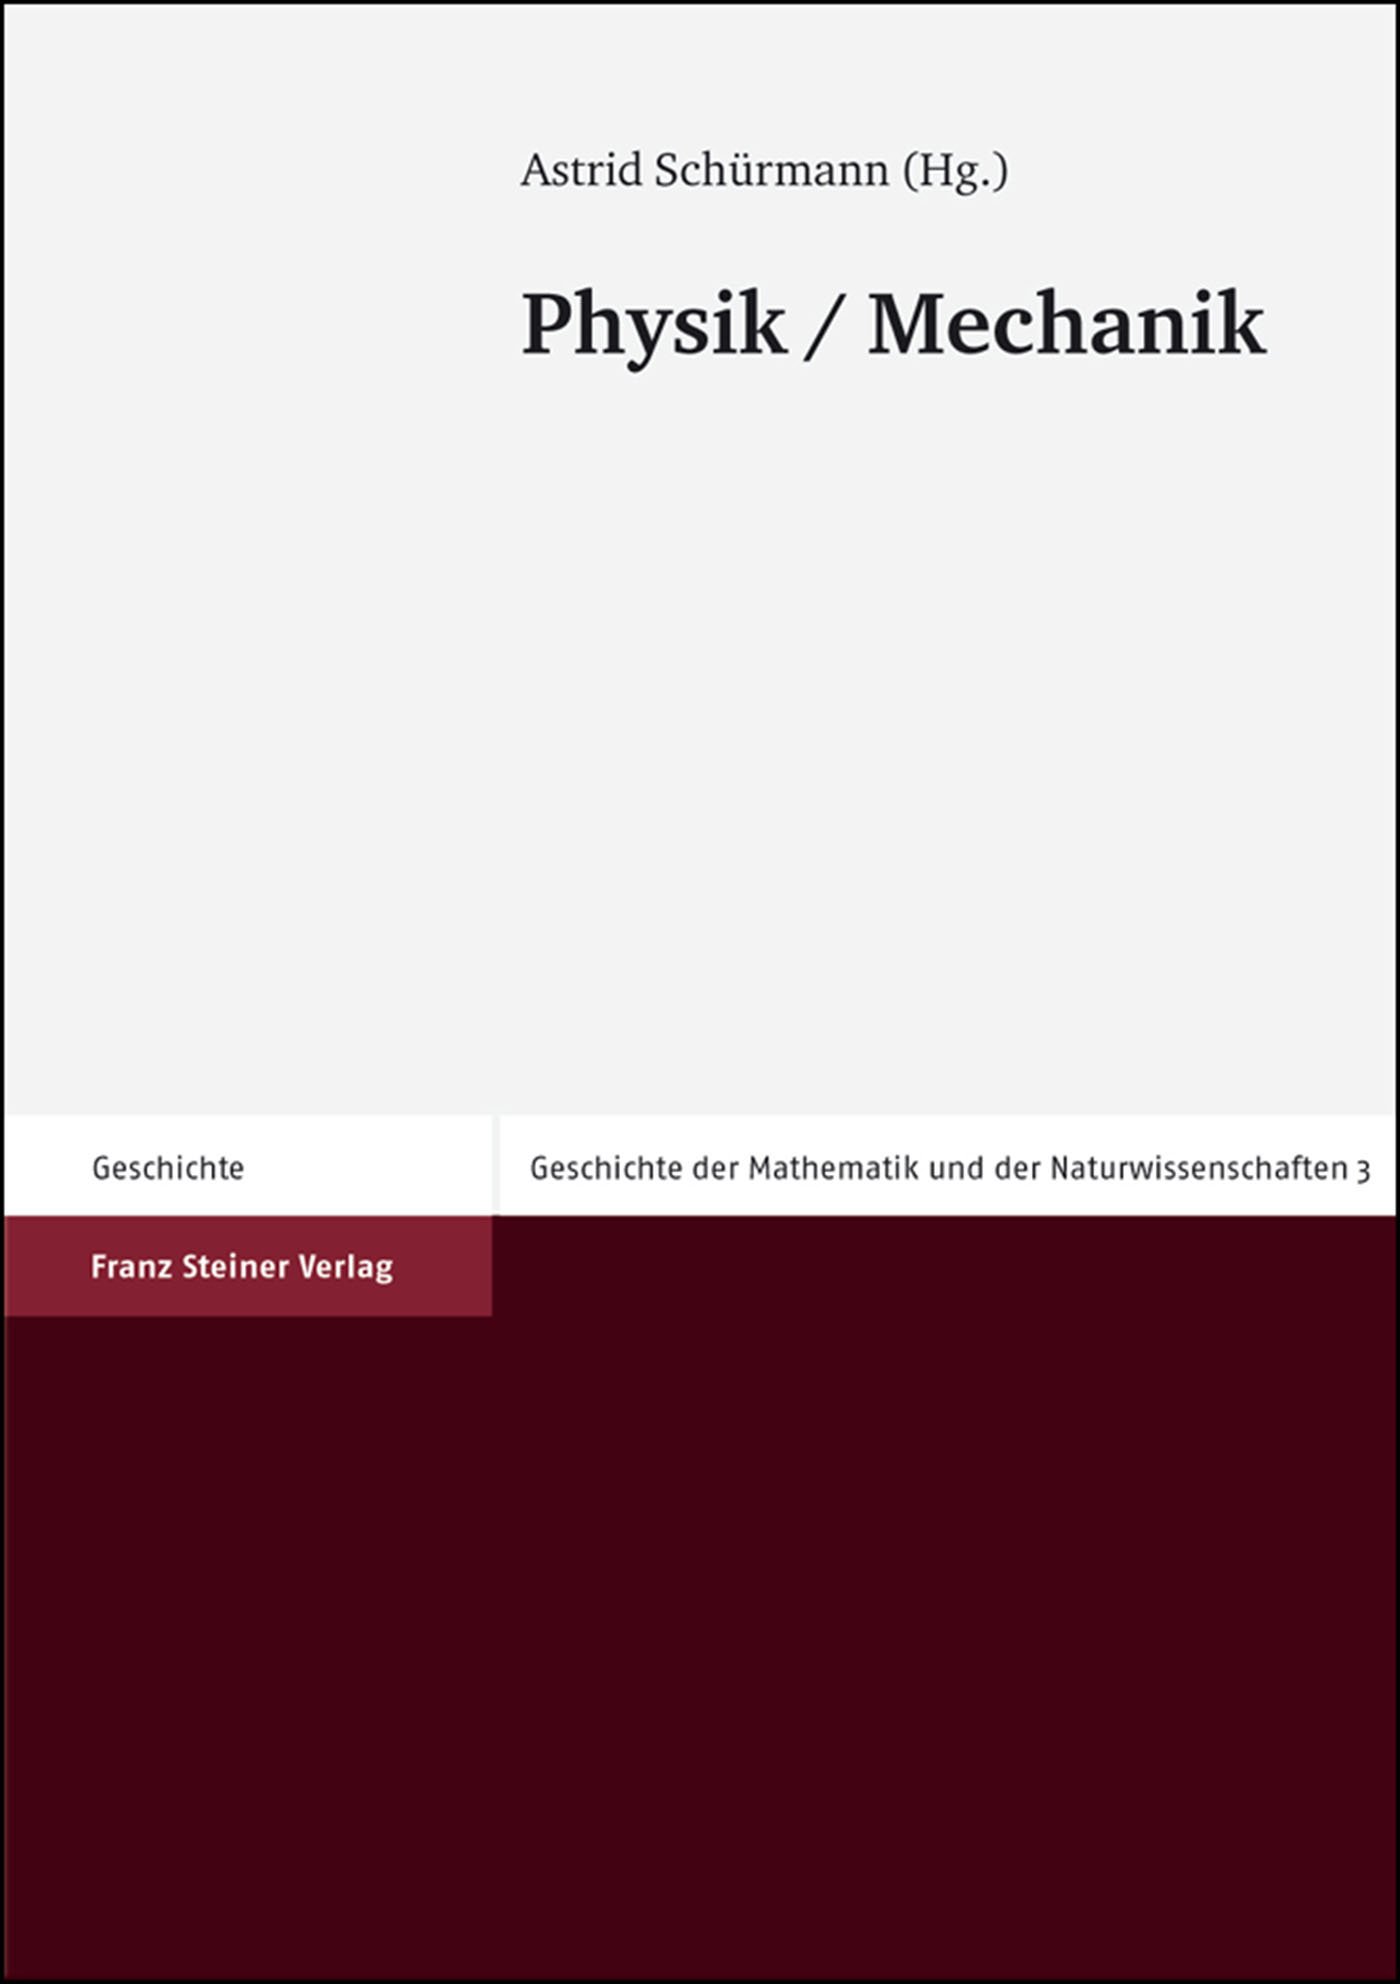 Physik / Mechanik